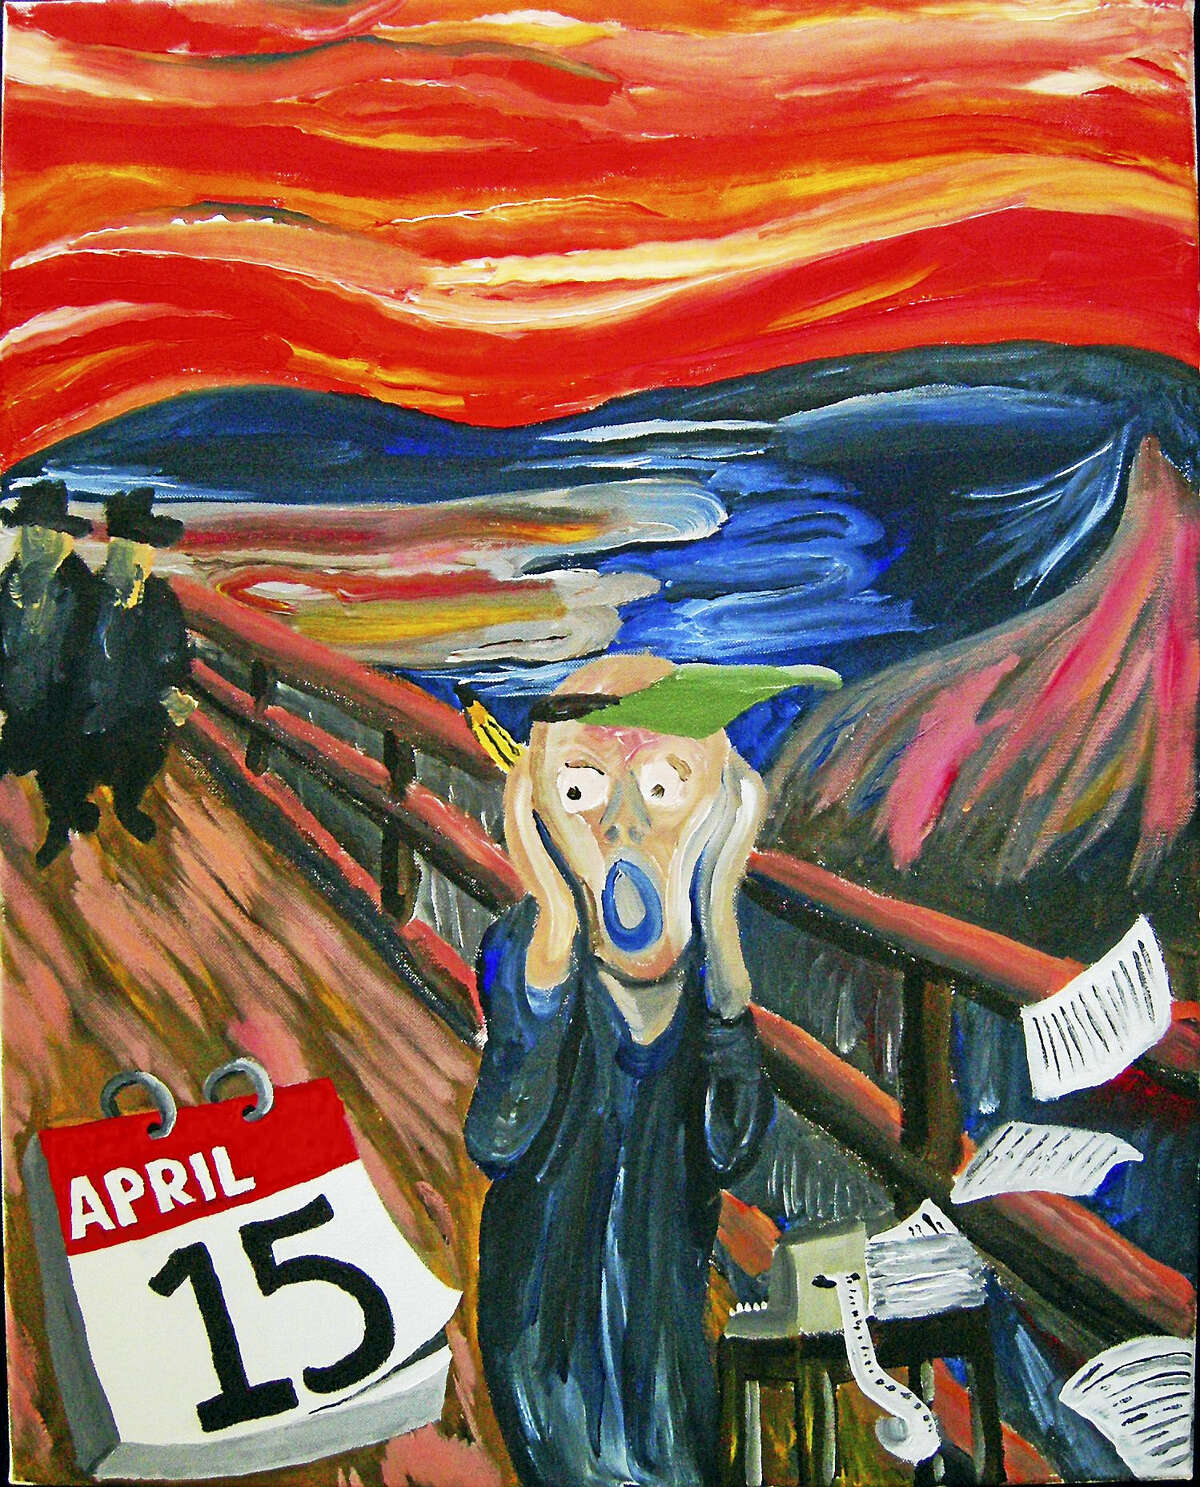 Tony Juliano’s parody painting of “April 15th.”